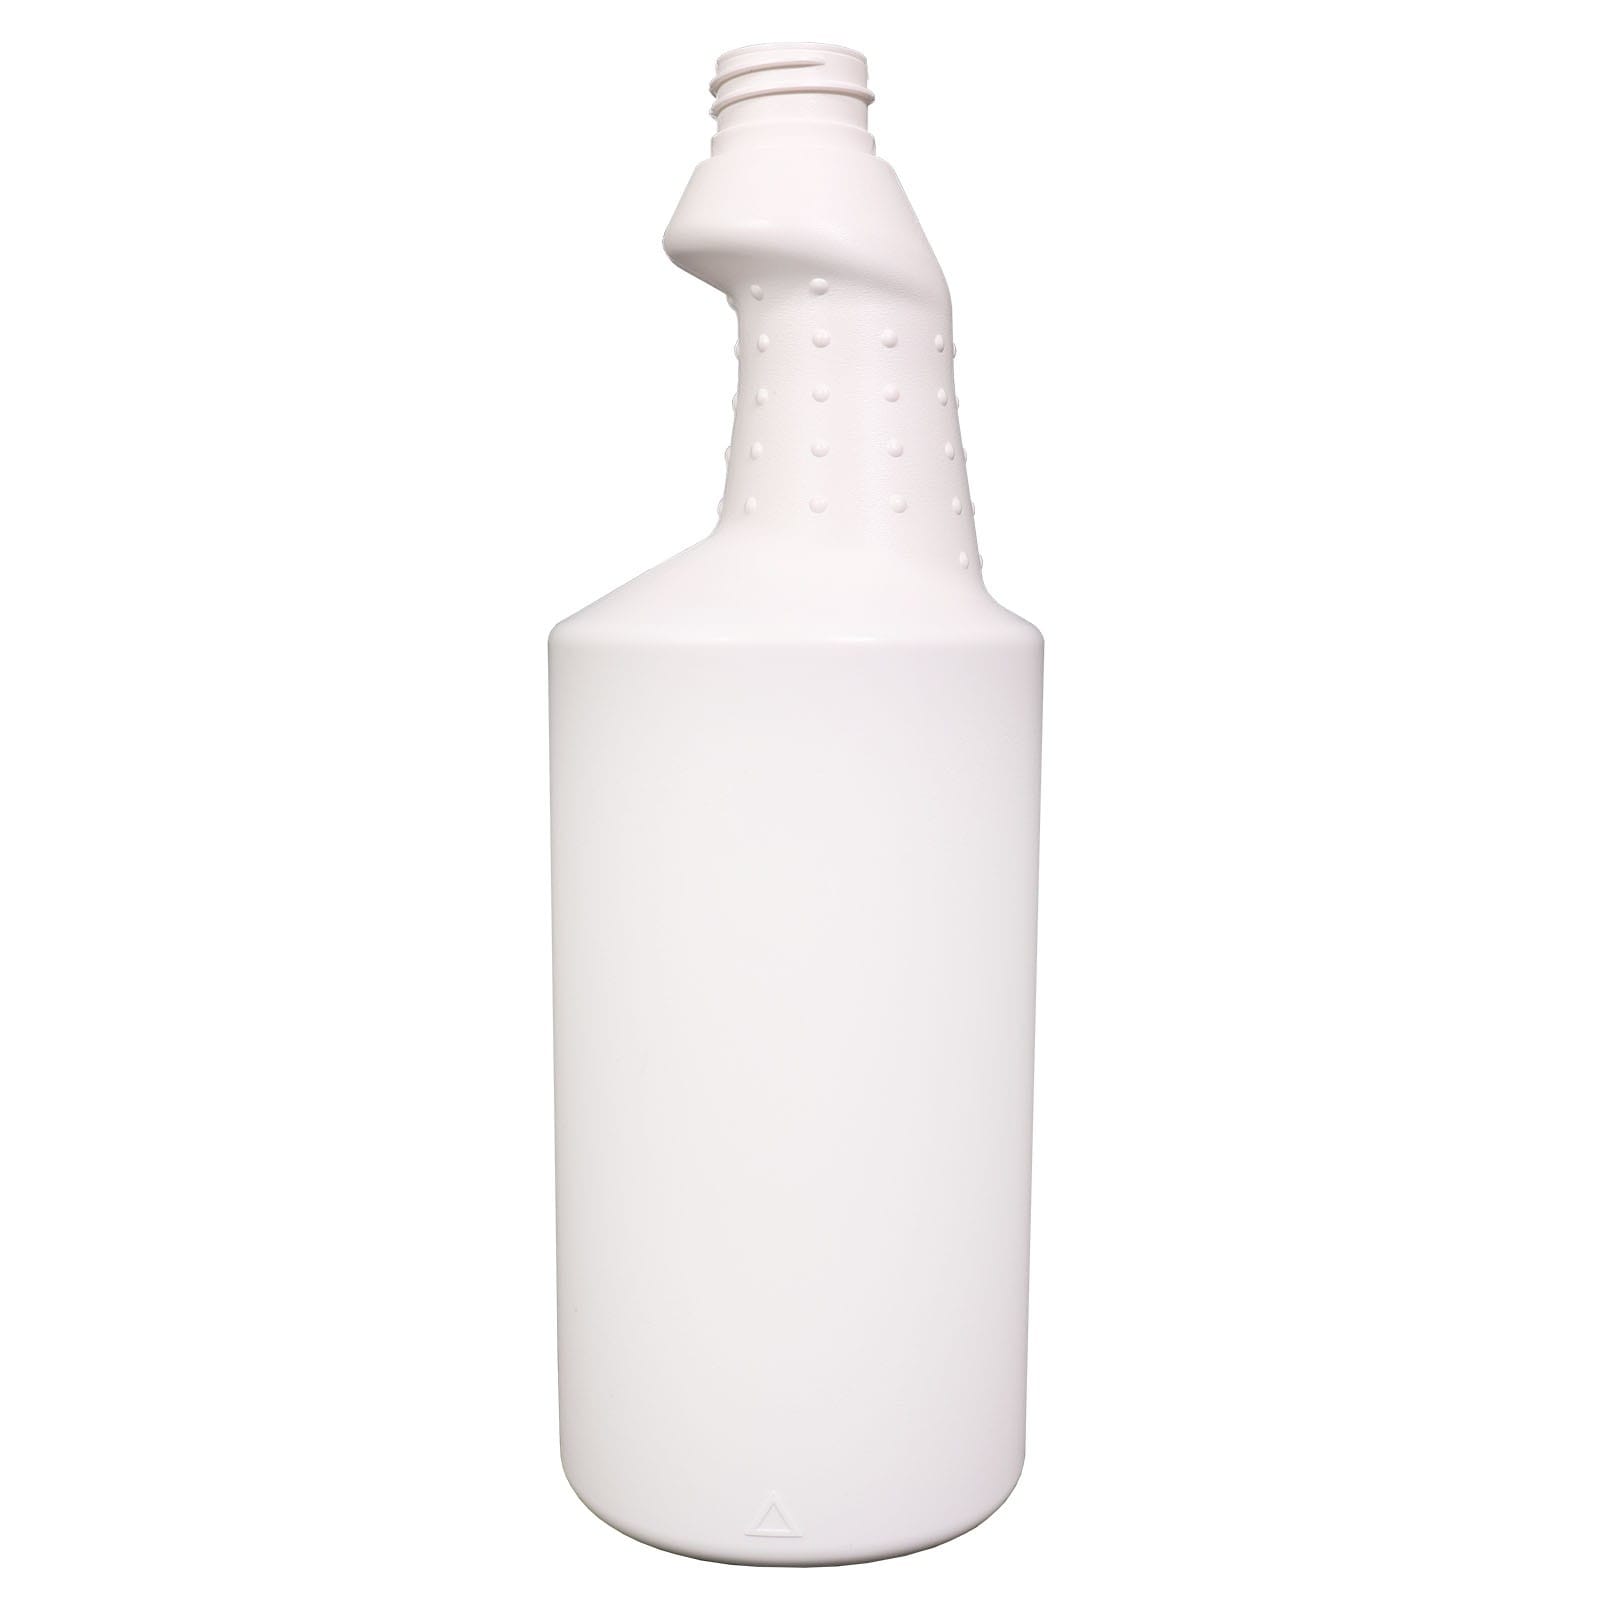 Handsprühflasche leer, Sprühflasche auffüllbar, Handsprüher 750 ml